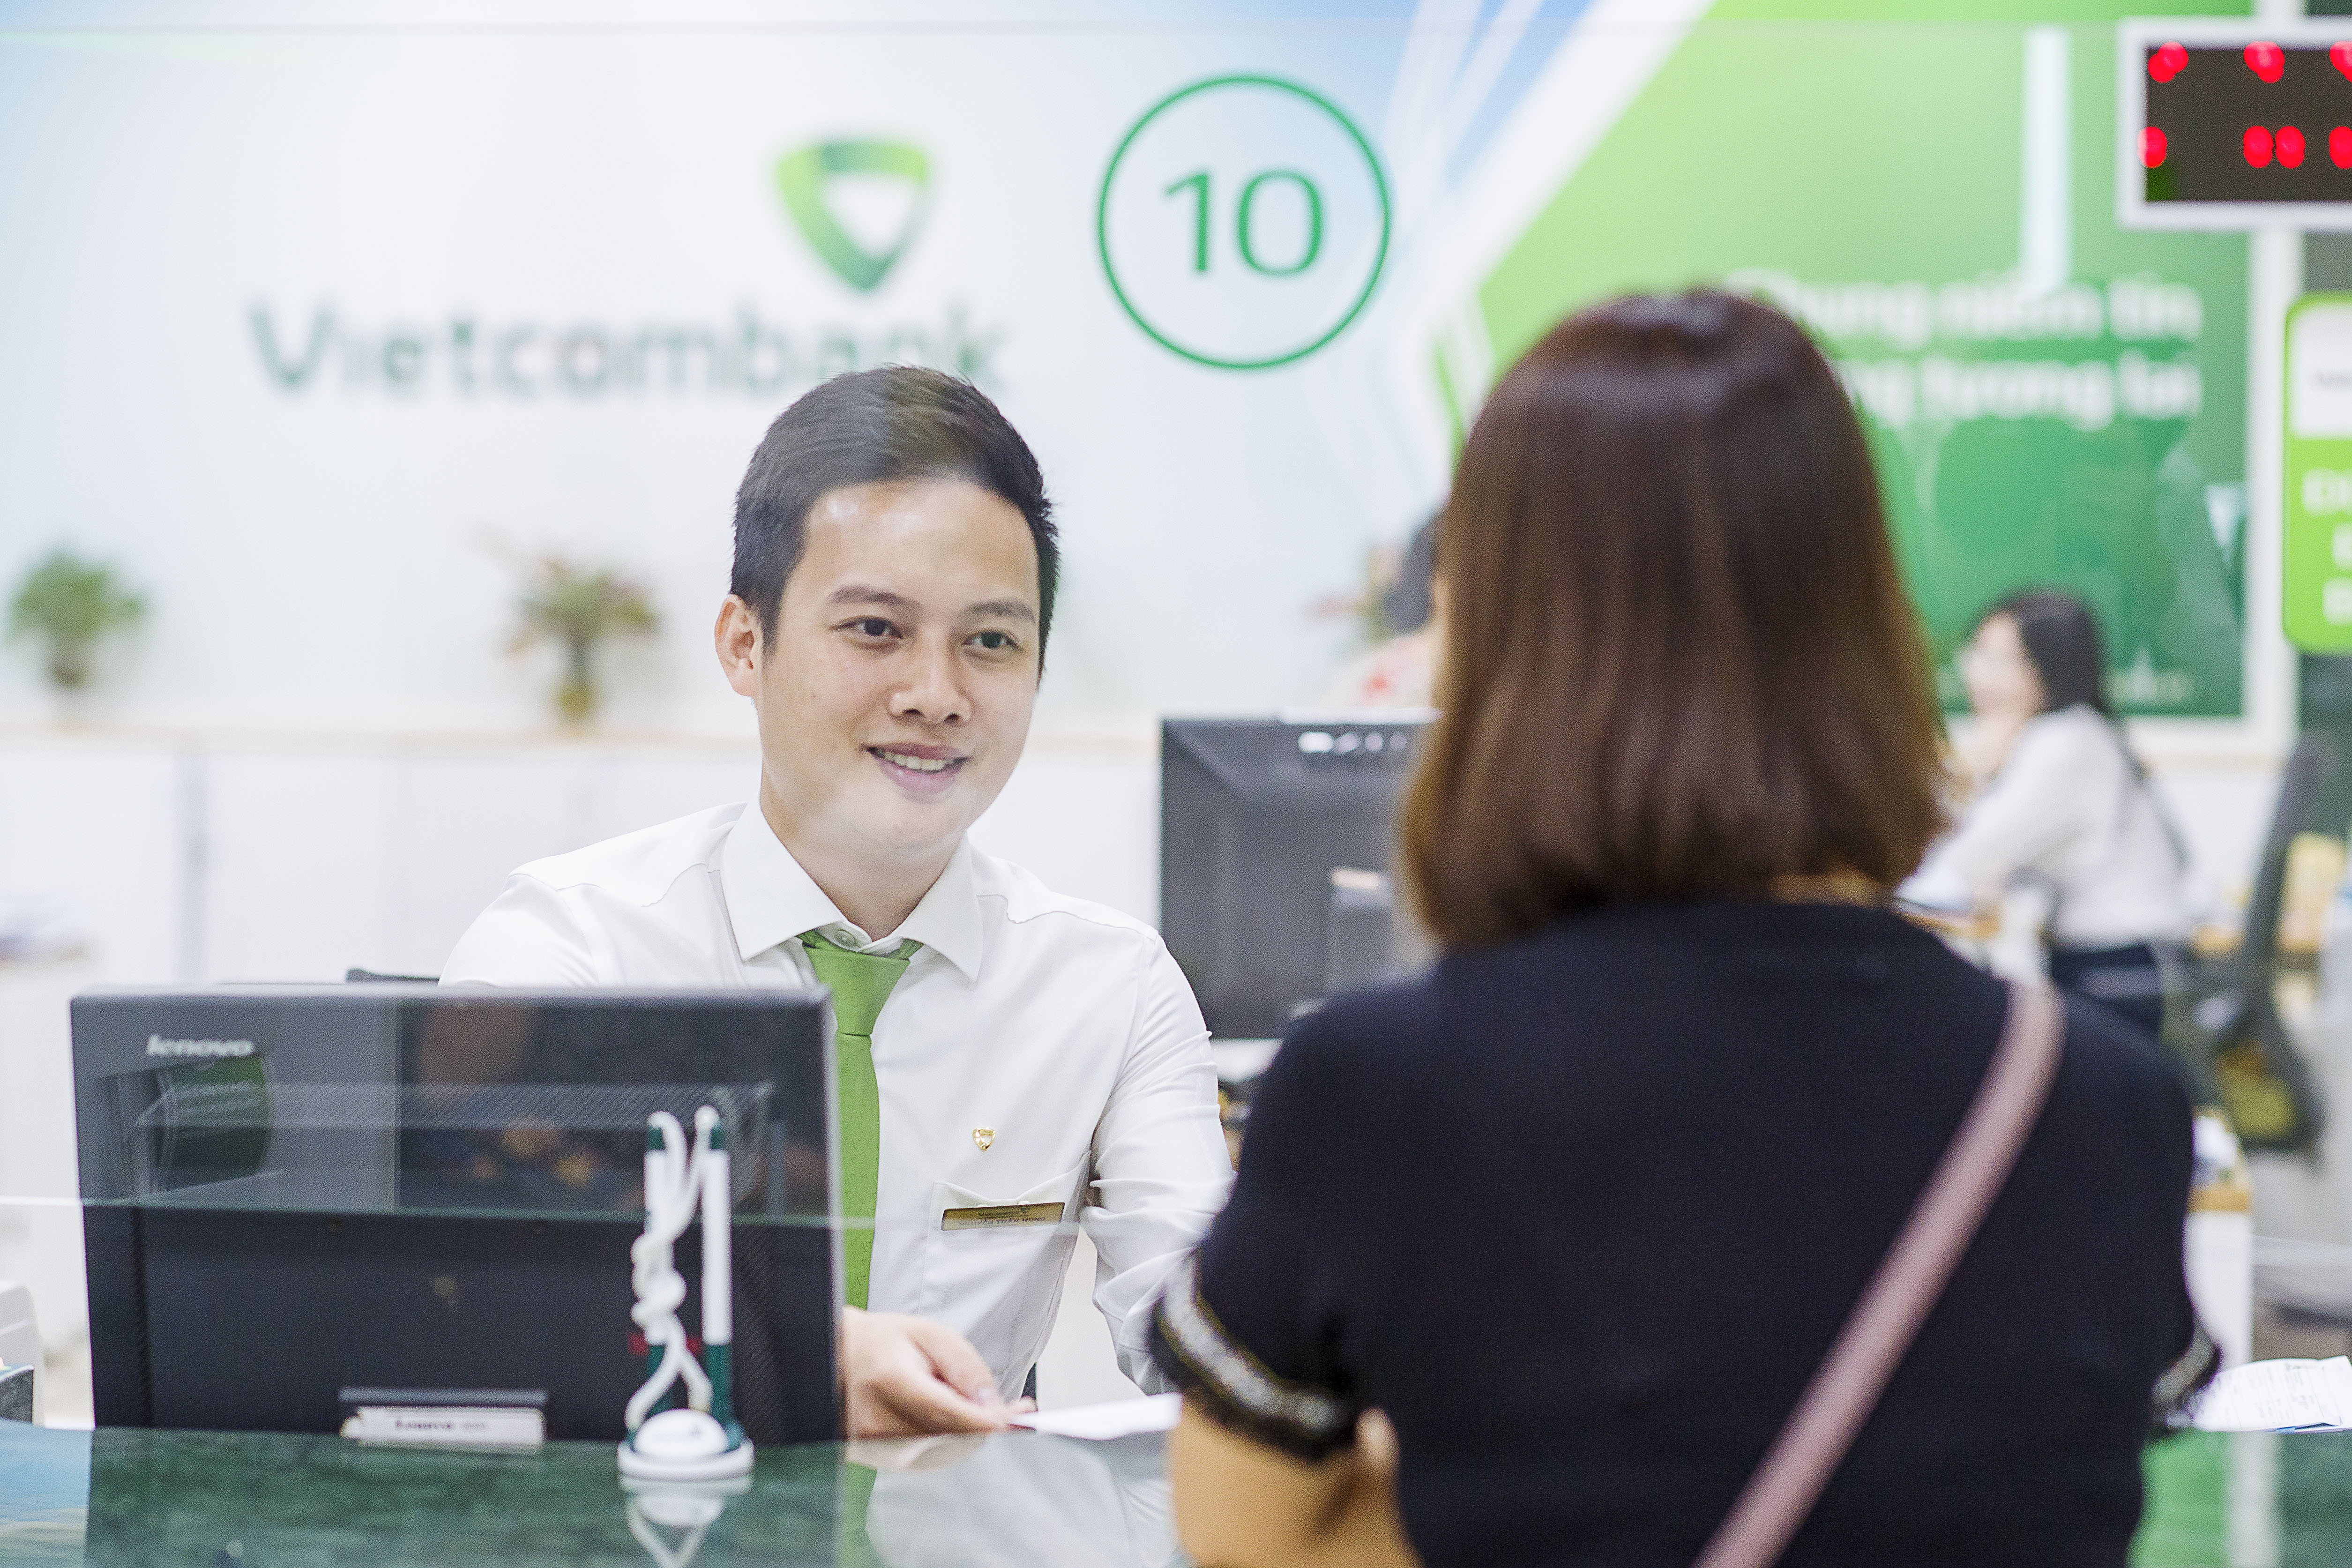 Dịch vụ ngân hàng điện tử của Vietcombank bất ngờ dừng hoạt động vào đêm  muộn